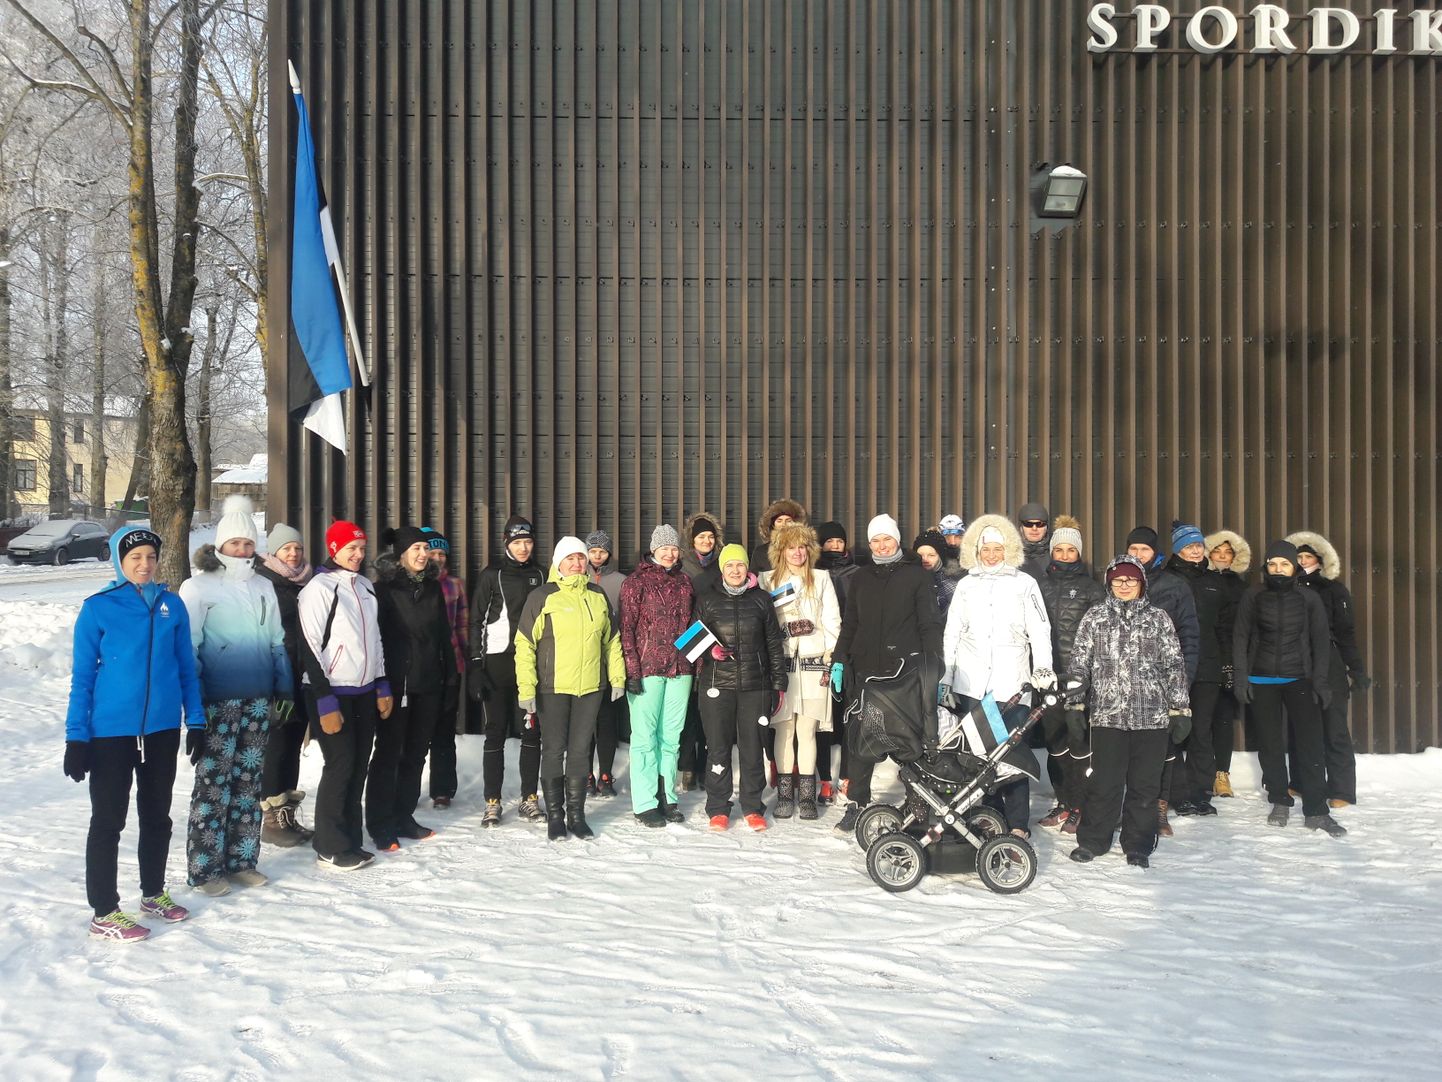 Eesti Vabariigi sünnipäeva hommikul kell 9 suunduti Aqva spordikeskuse eest 100 minuti distantsile.